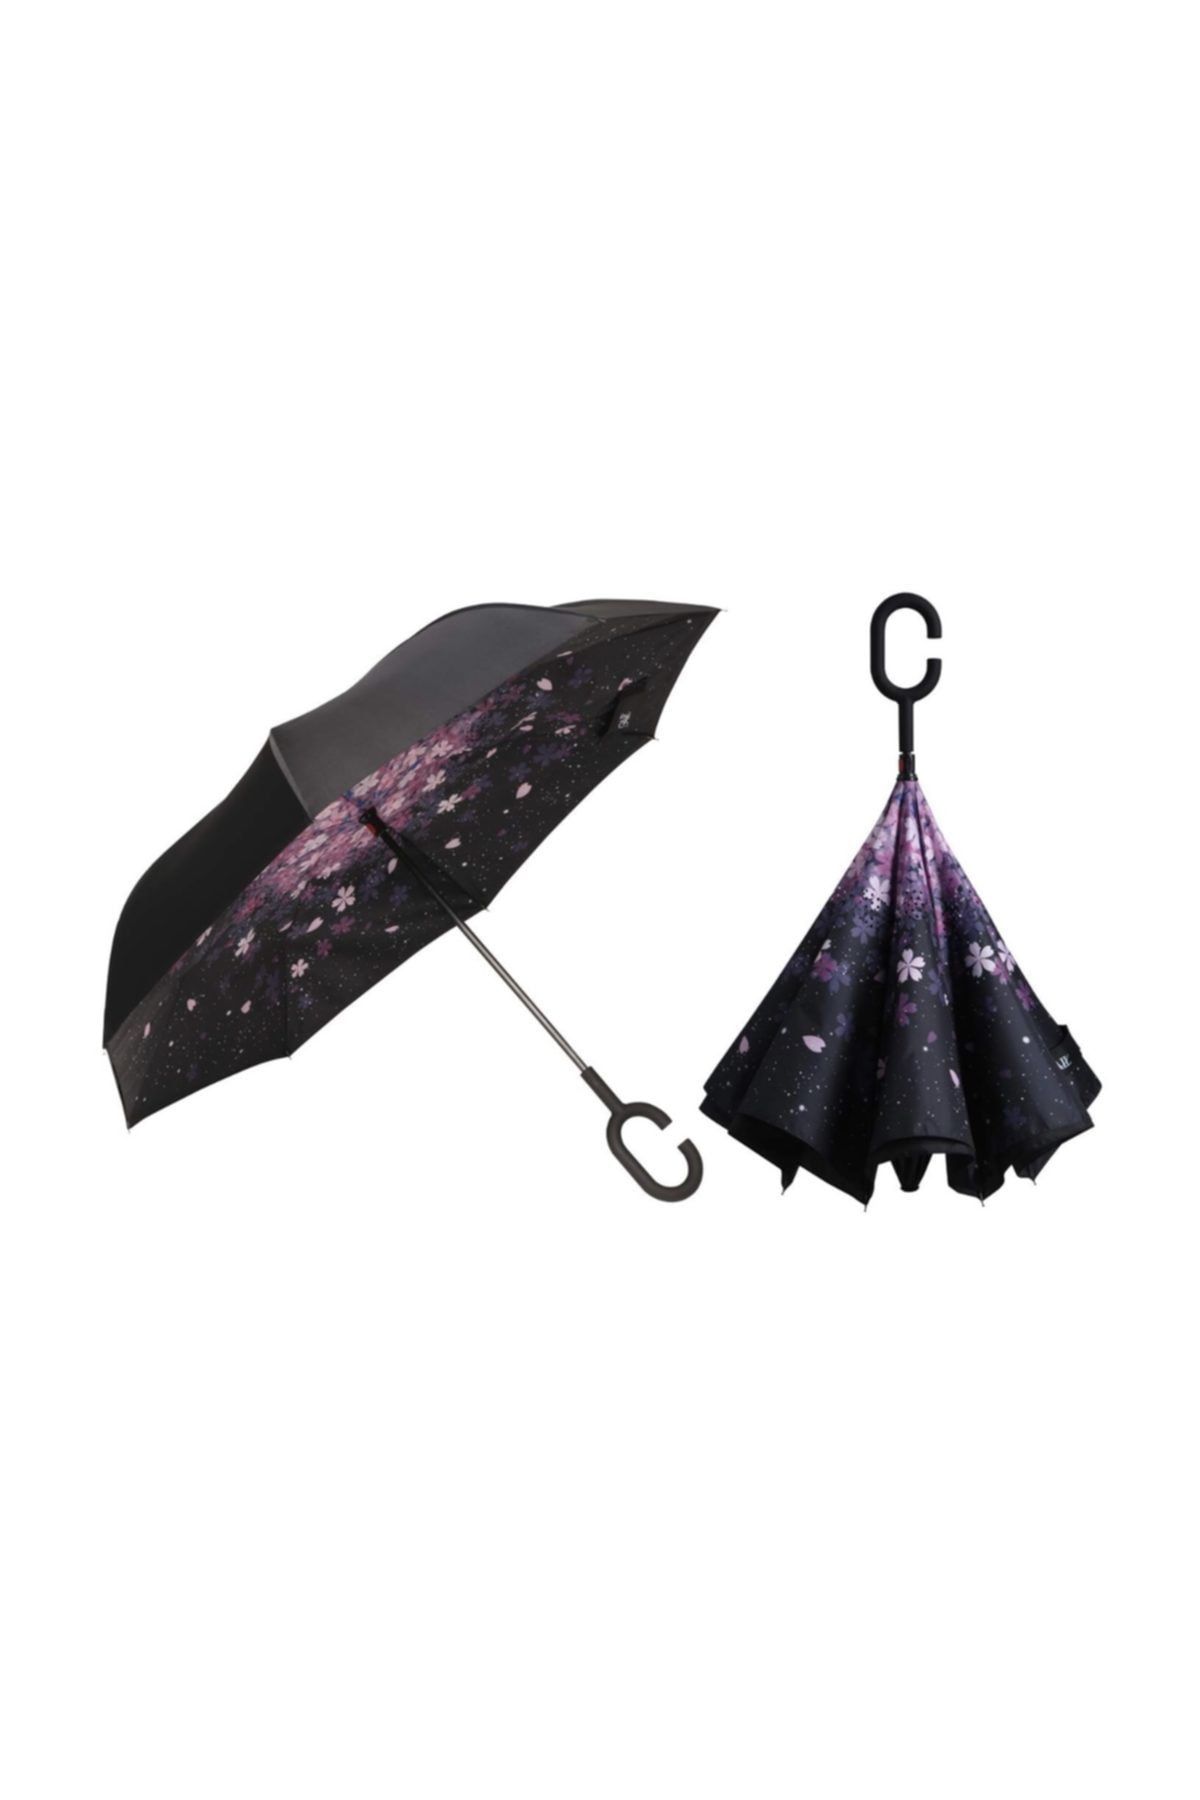 ZeplinStore Zeplin Ters Açılan Kuru Kalan Rüzgar Tahliyeli Inovatif Şemsiye (yağmurluk Hediyeli) (mor Çiçekli)